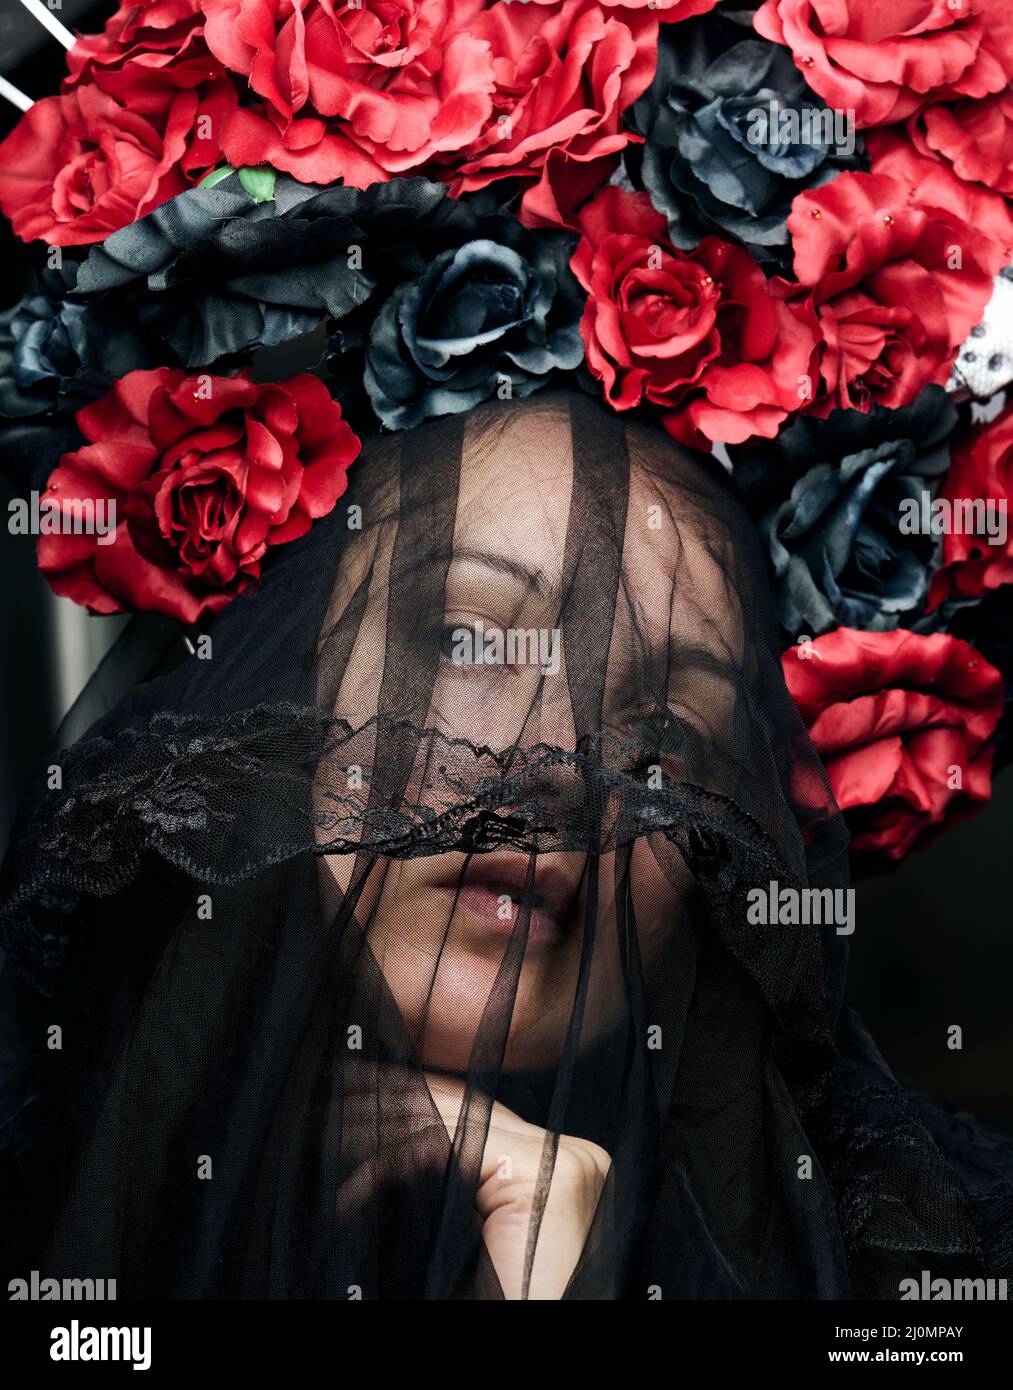 Una mujer de apariencia caucásica está vestida con un velo negro y una gran corona de rosas de color rojo y negro Foto de stock